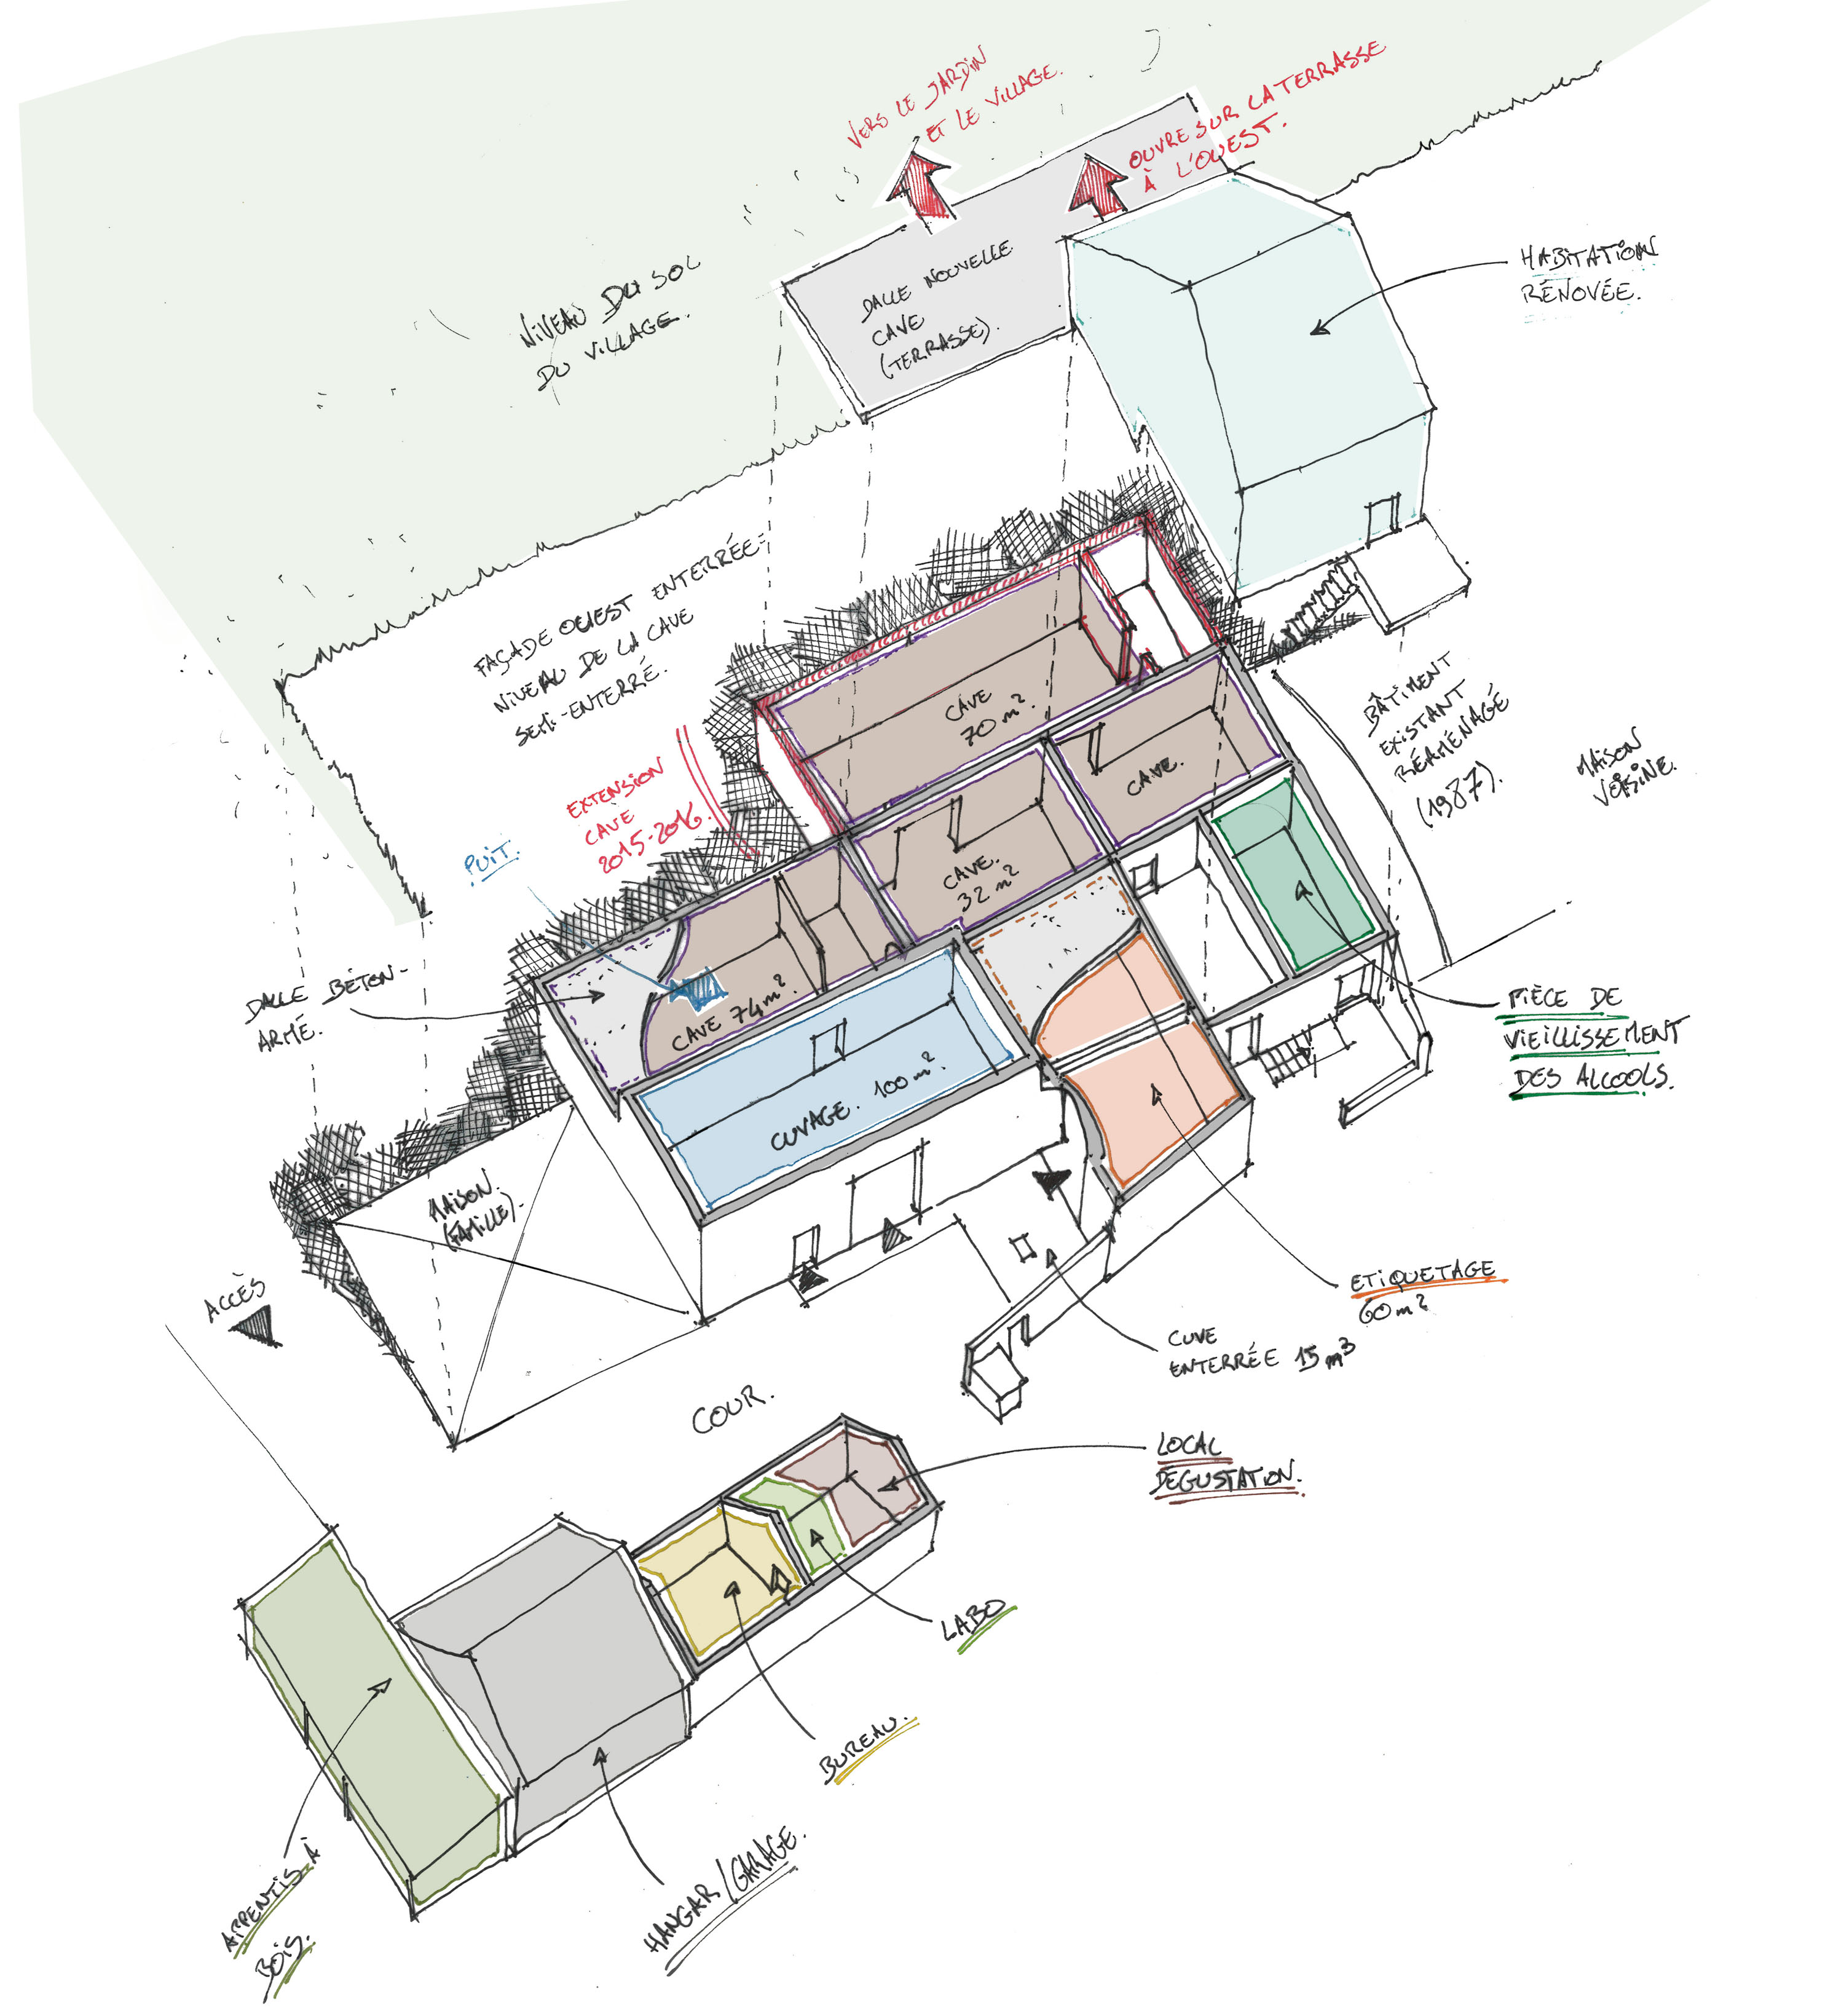 Organisation spatiale : réutilisation des espaces existants pour installer les locaux de vinification et les caves (+extension 2015)